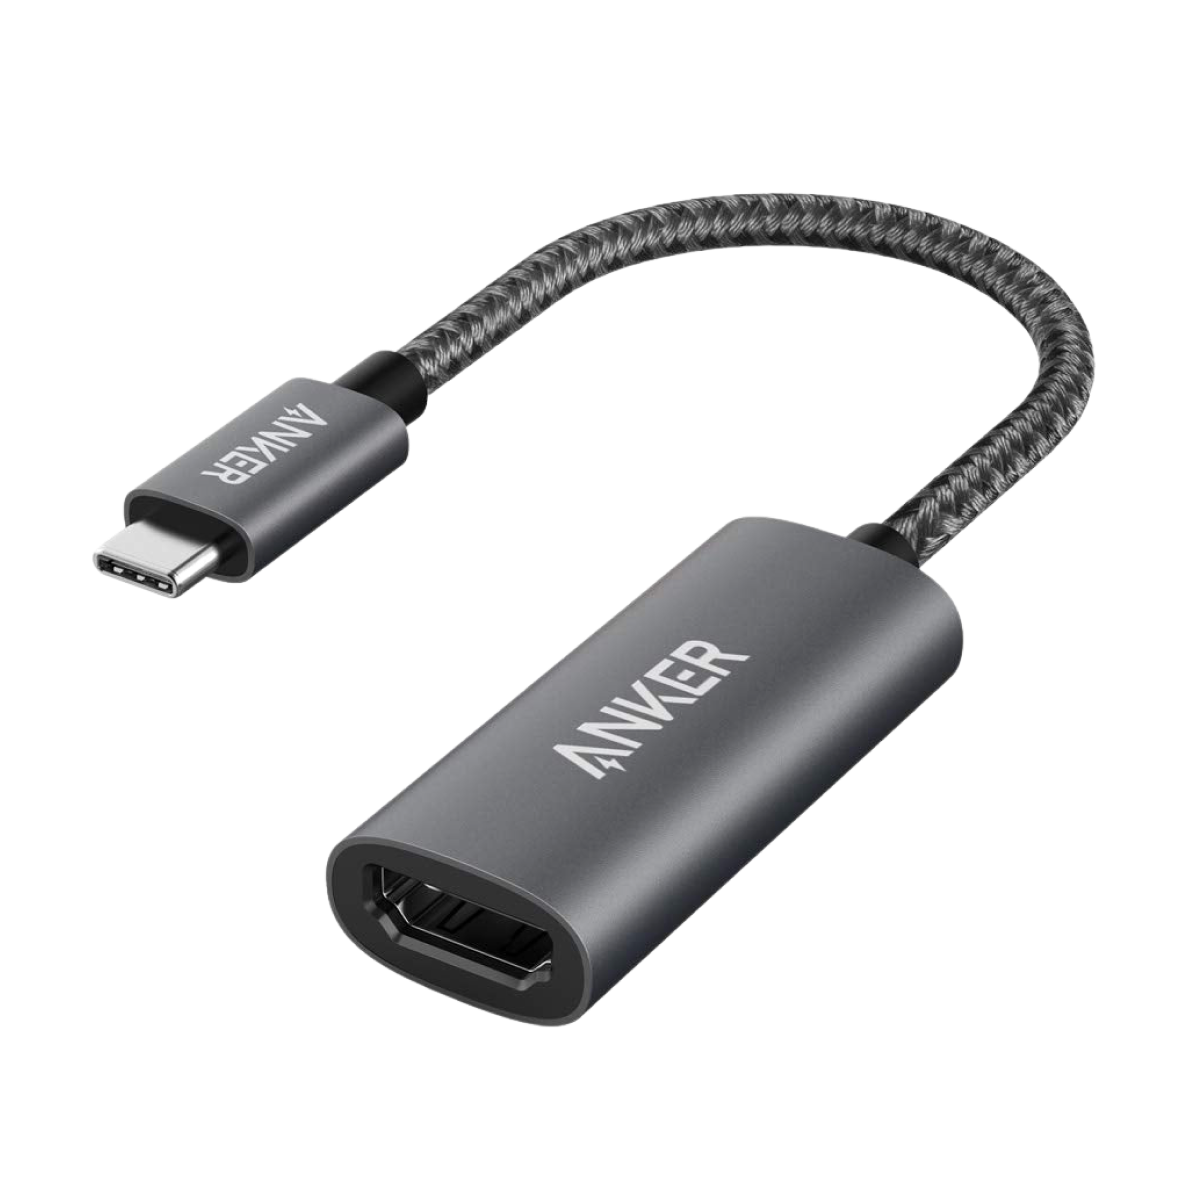 Anker <b>310</b> USB-C Adapter (4K HDMI)